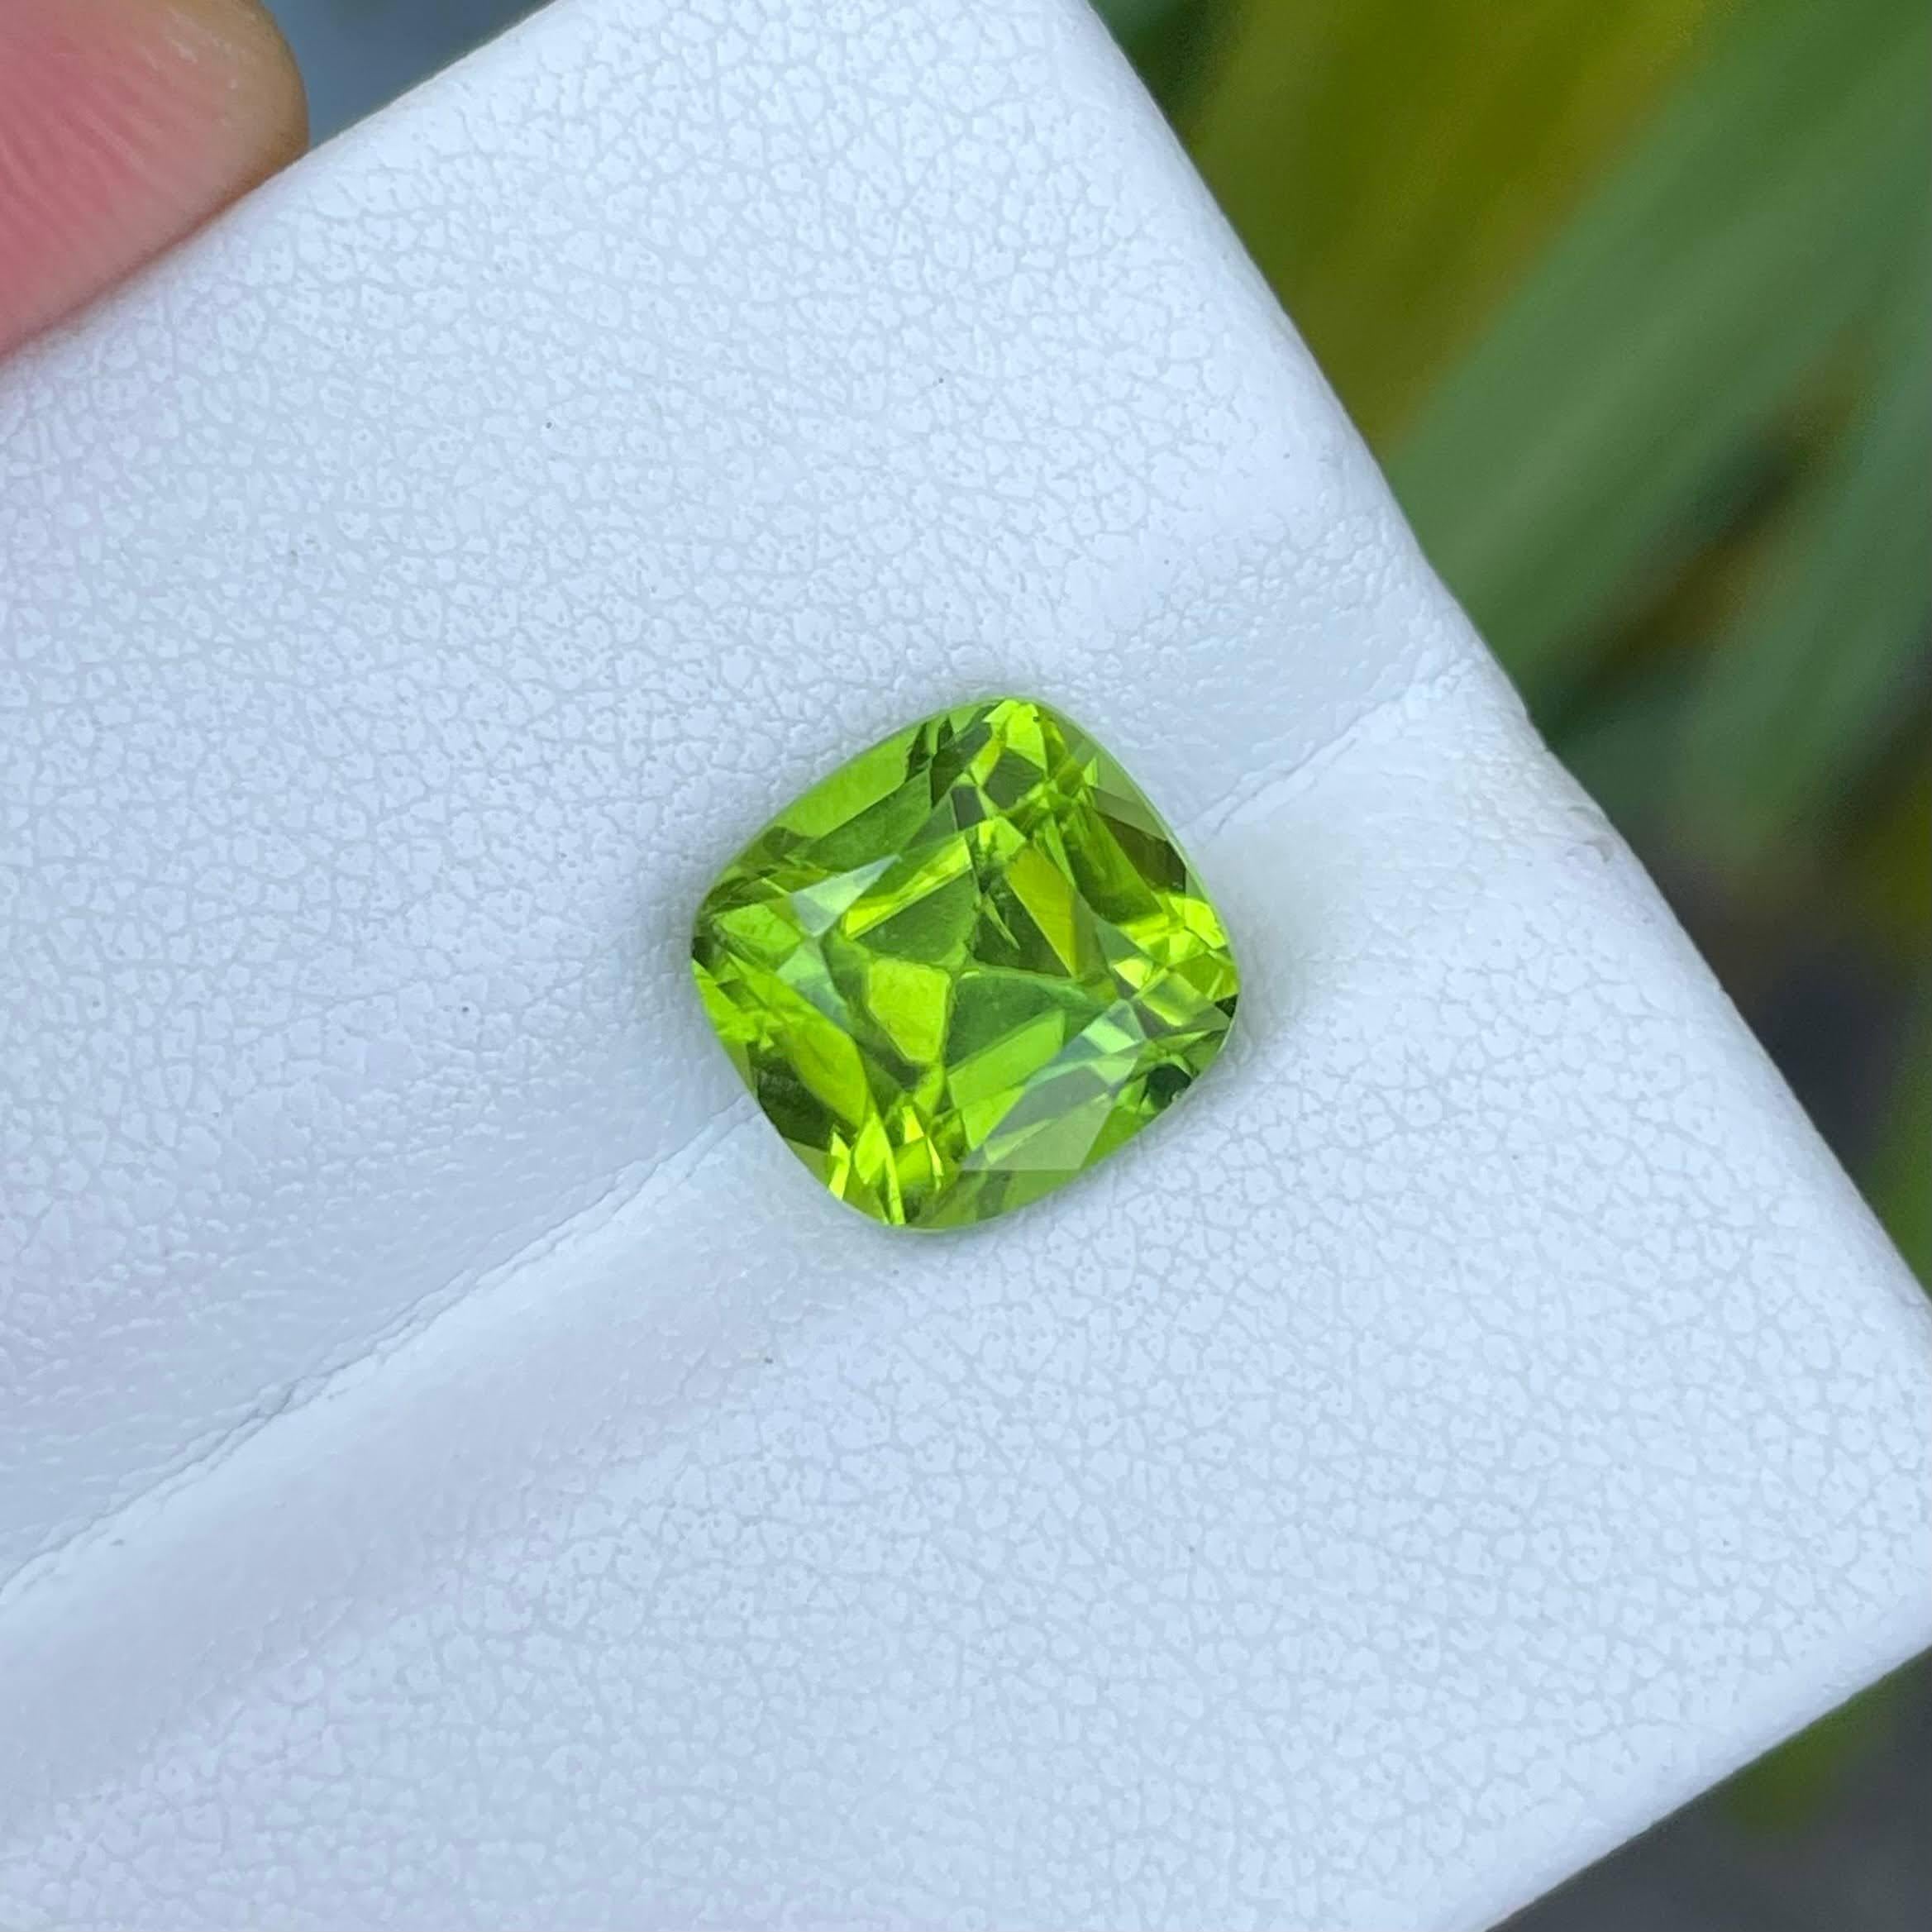 Poids 4,25 carats 
Dimensions 9,65x9,20x6,60 mm
Traitement aucun 
Origine : Pakistan 
Clarté VVS
Coussin de forme 
Coupe fantaisie coussin 





La pierre péridot vert tendre de 4,25 carats, qui présente une taille coussin captivante, est un